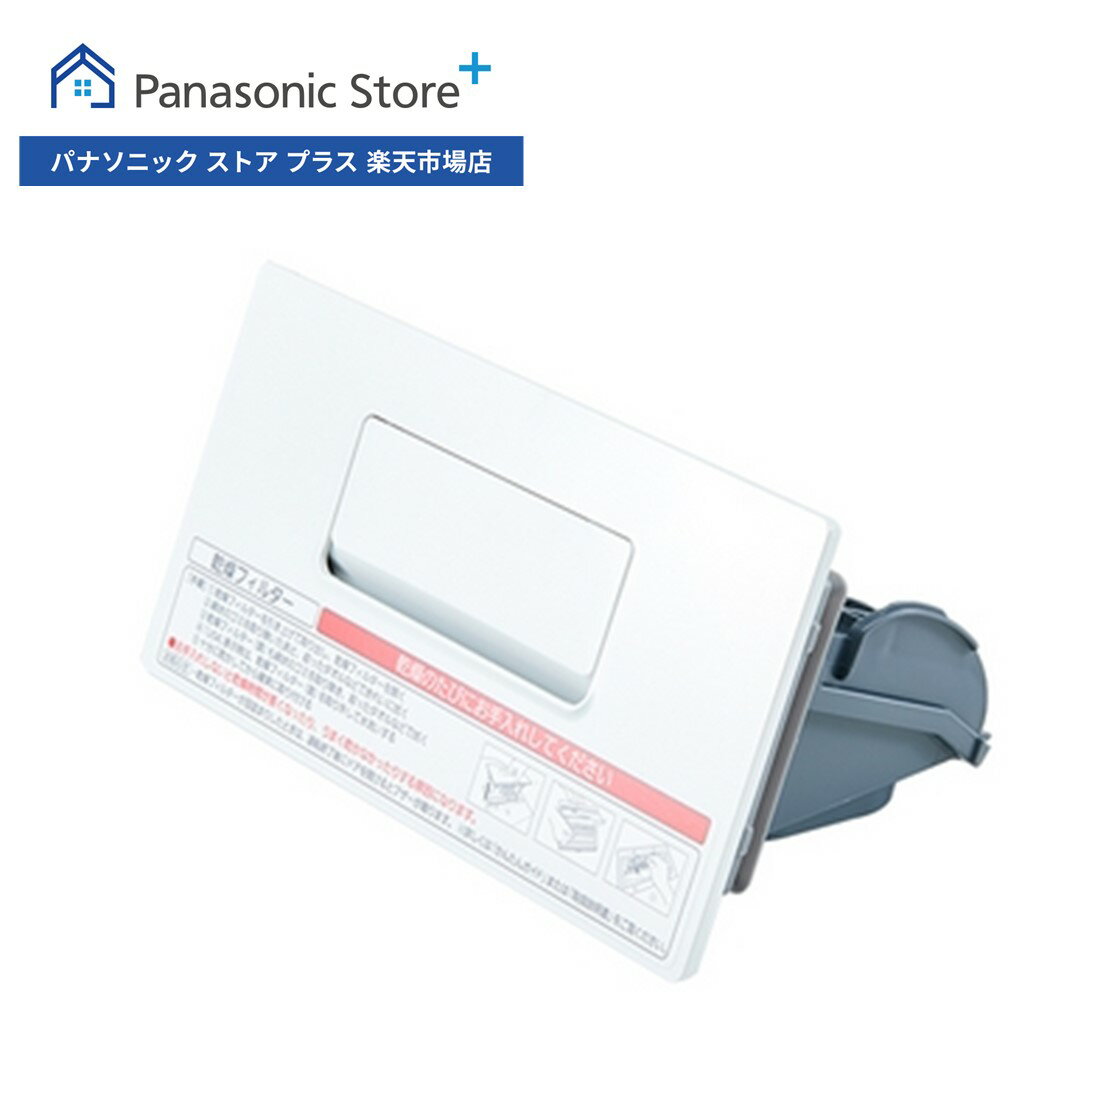 Panasonic（パナソニック） 洗濯機用乾燥フィルター(奥) 1001000025698417 AXW2208-9SG0